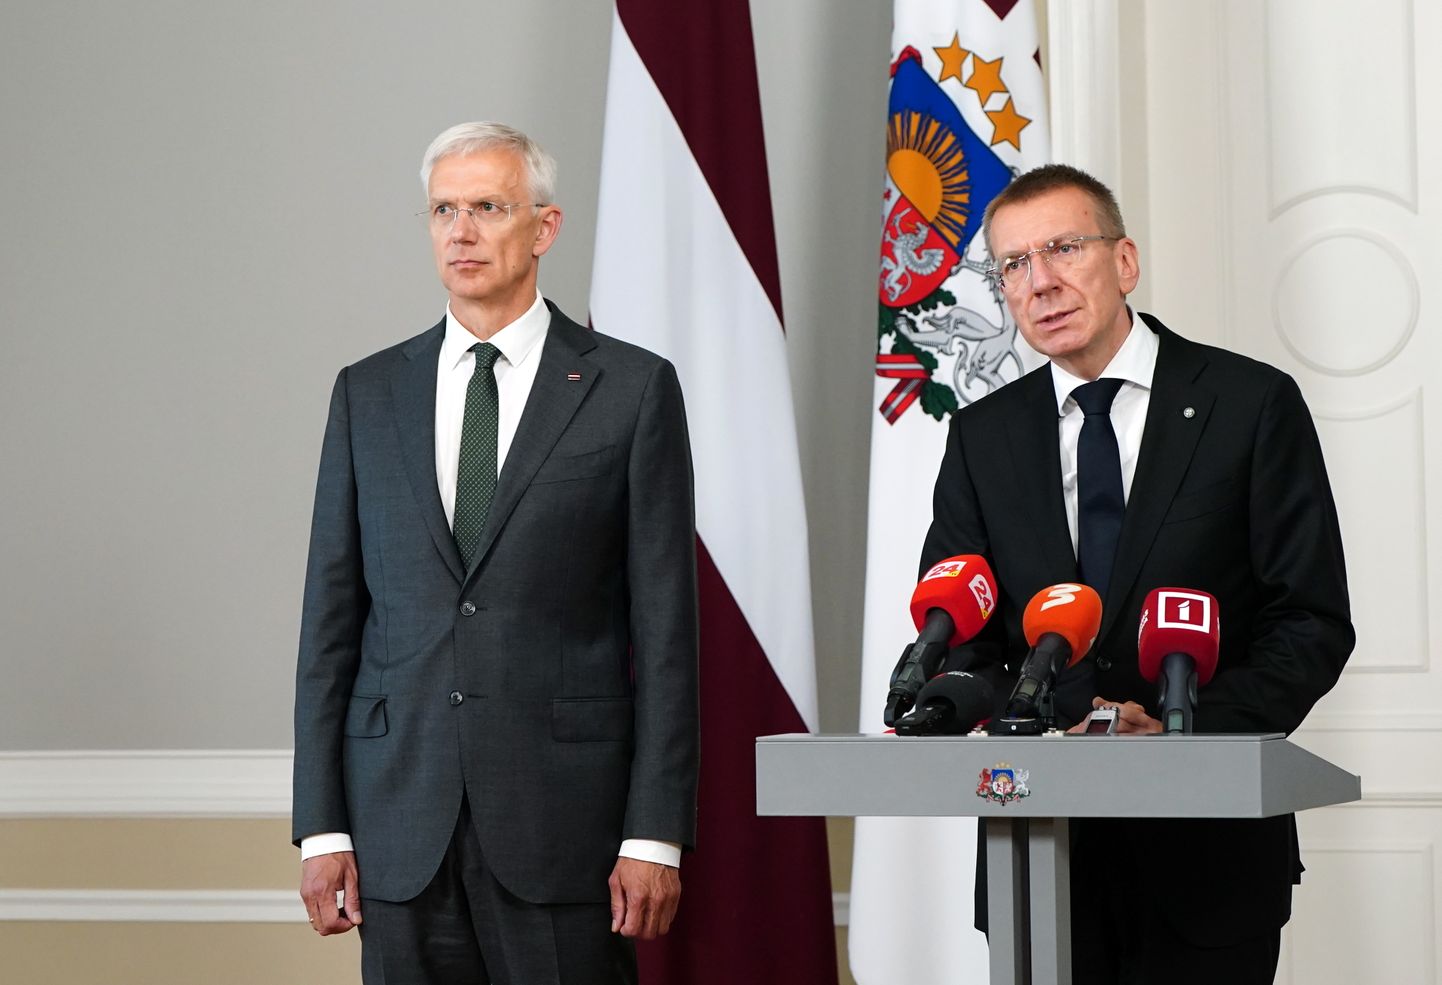 Valsts prezidents Edgars Rinkēvičs (no labās) un Ministru prezidents Krišjānis Kariņš piedalās preses brīfingā pēc tikšanās Rīgas pilī.